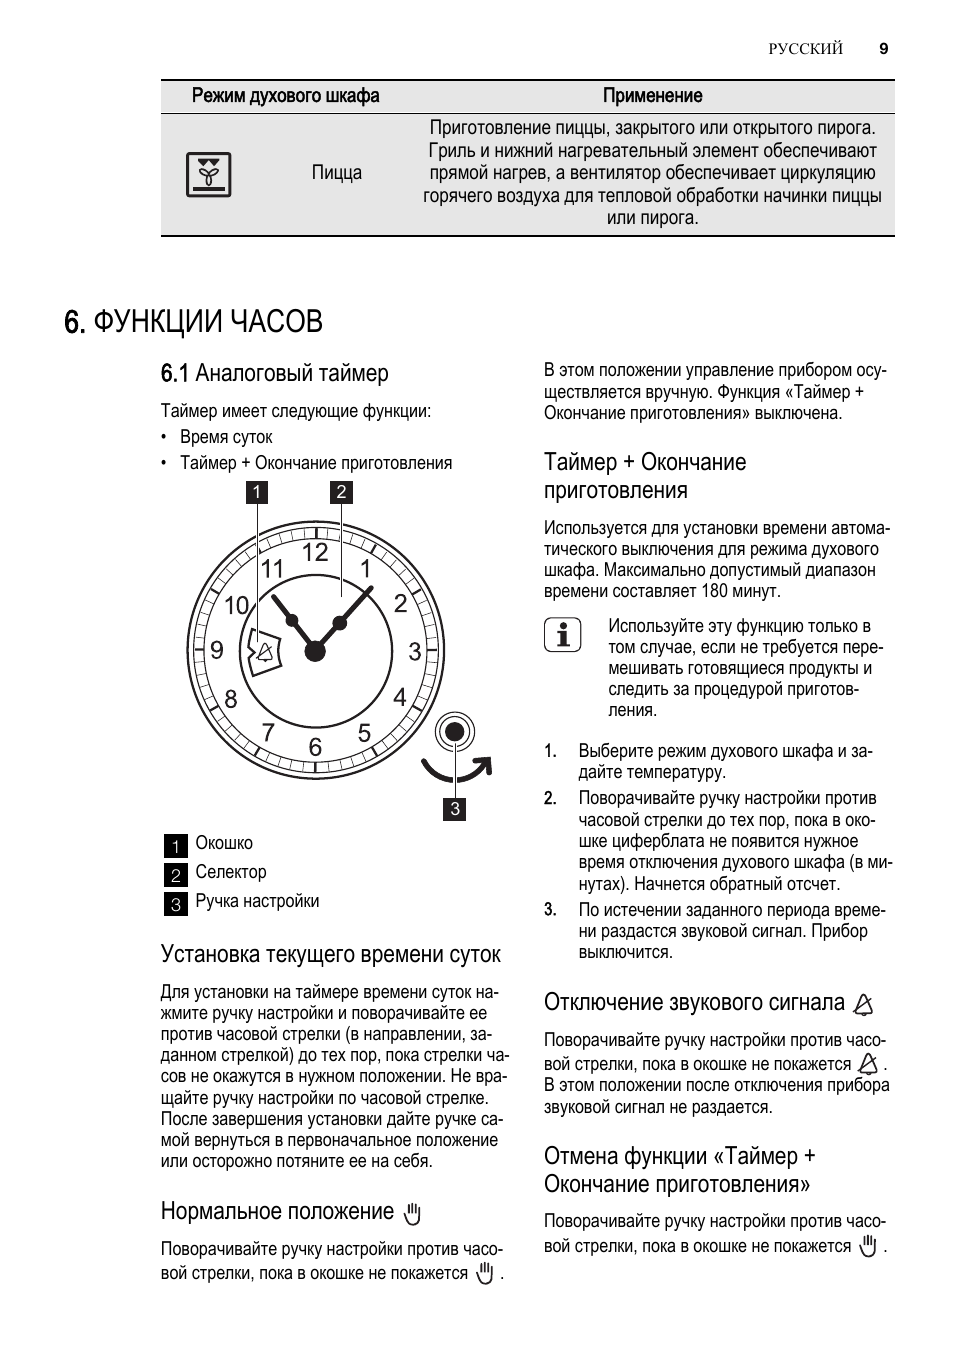 Инструкция духового шкафа Электролюкс часы таймер